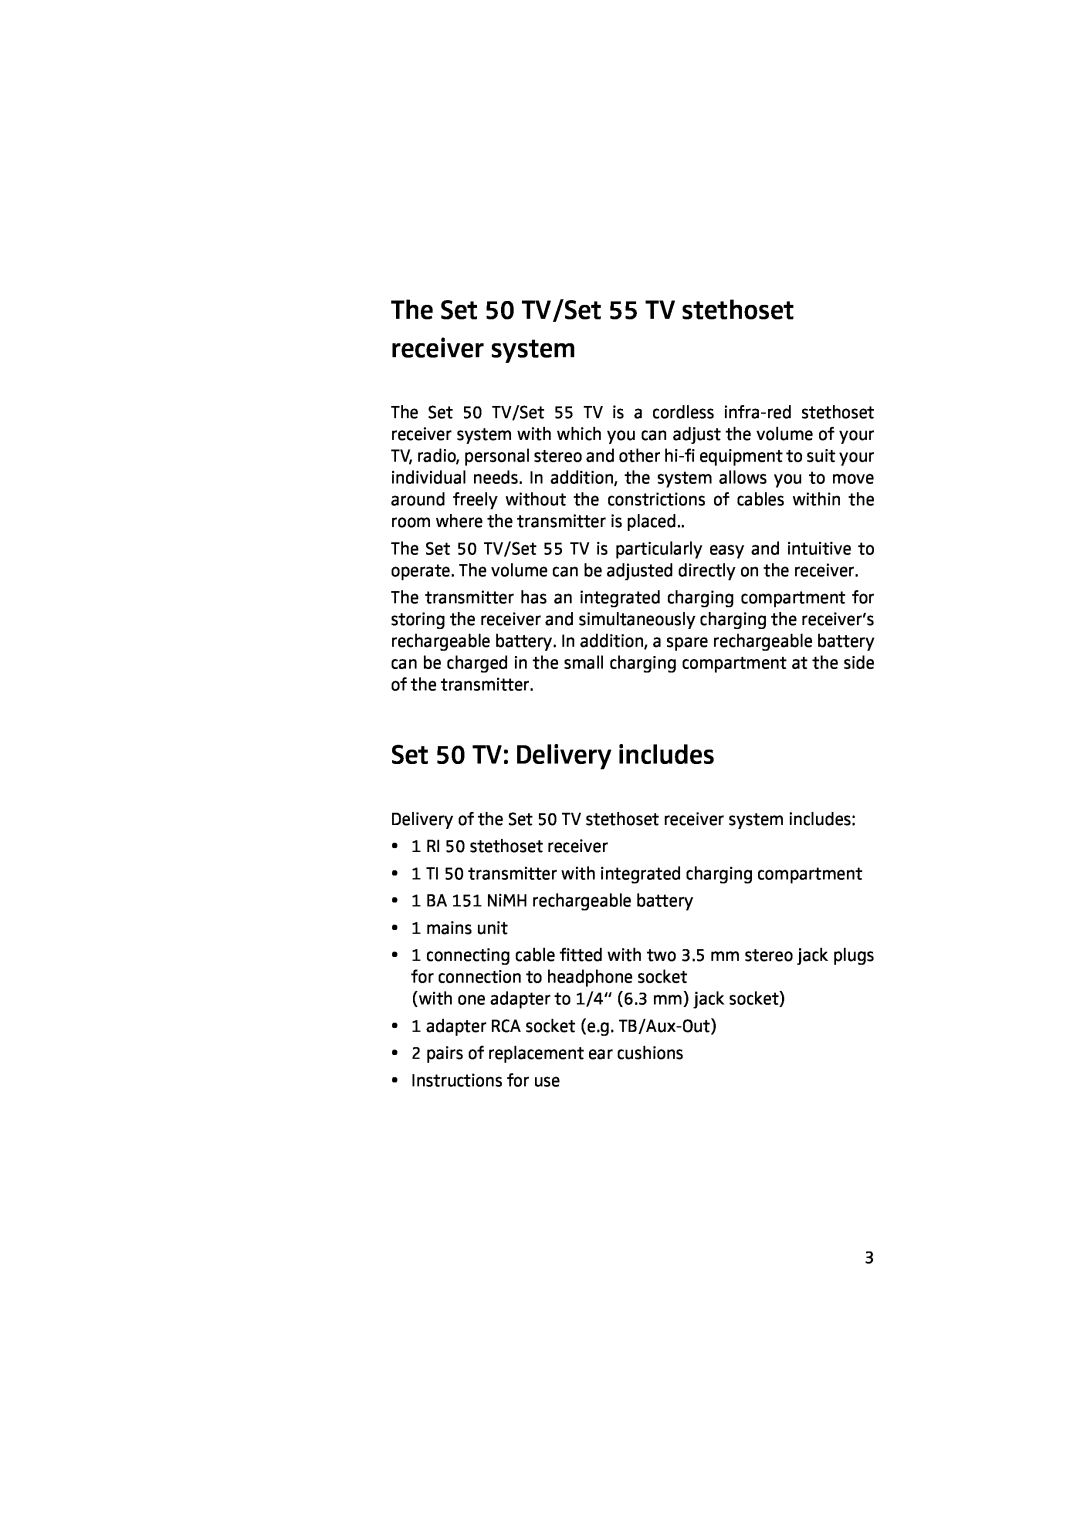 Sennheiser manual The Set 50 TV/Set 55 TV stethoset receiver system, Set 50 TV Delivery includes 